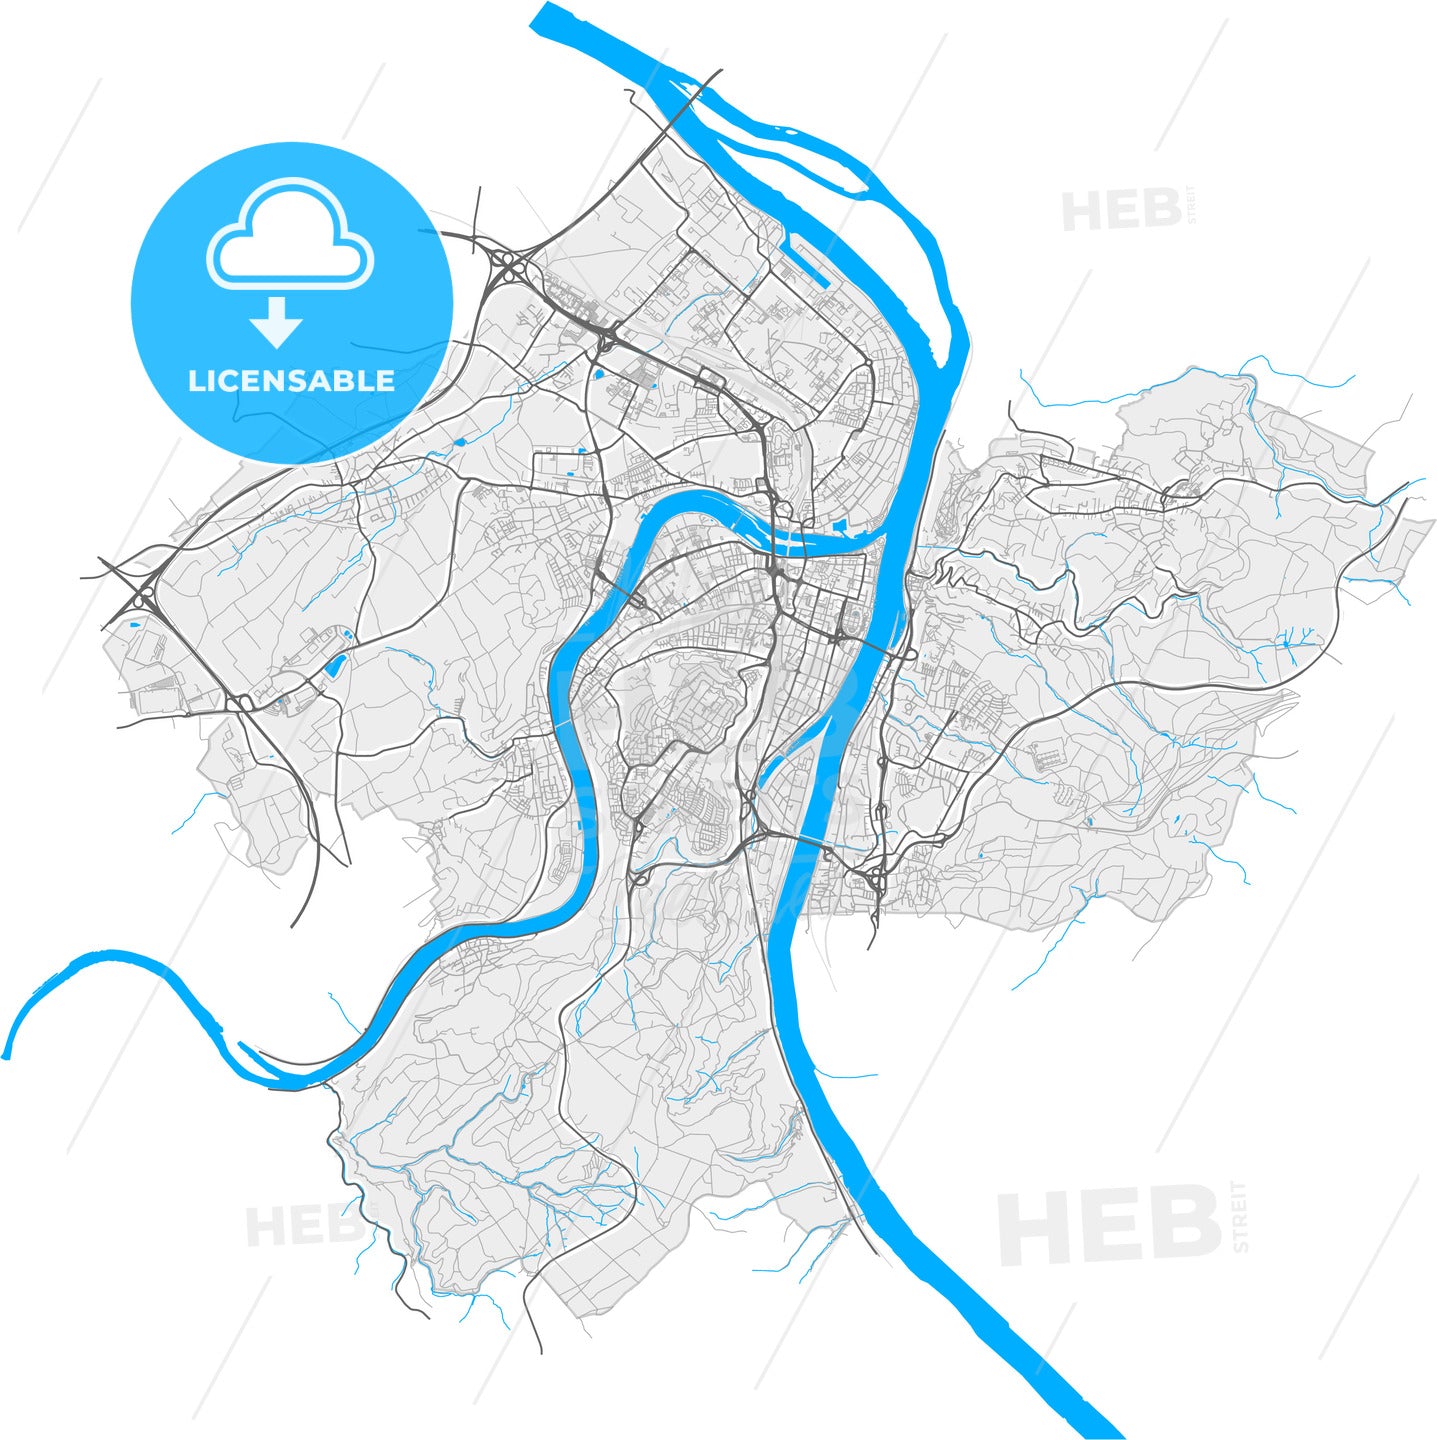 Koblenz, Rheinland-Pfalz, Germany, high quality vector map